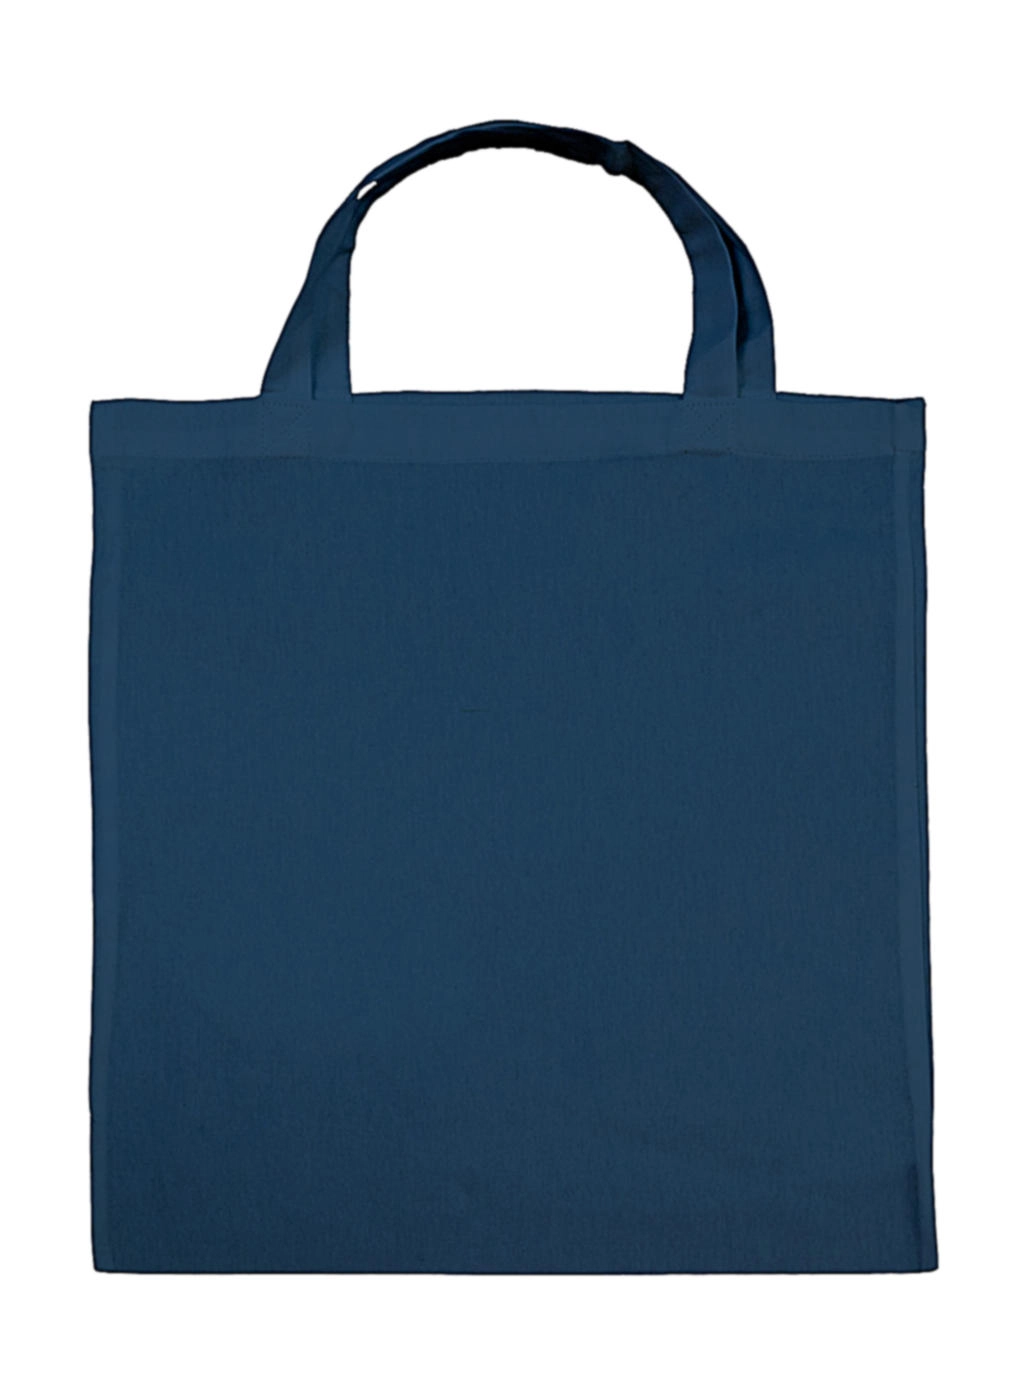 Cotton Shopper SH zum Besticken und Bedrucken in der Farbe Indigo Blue mit Ihren Logo, Schriftzug oder Motiv.